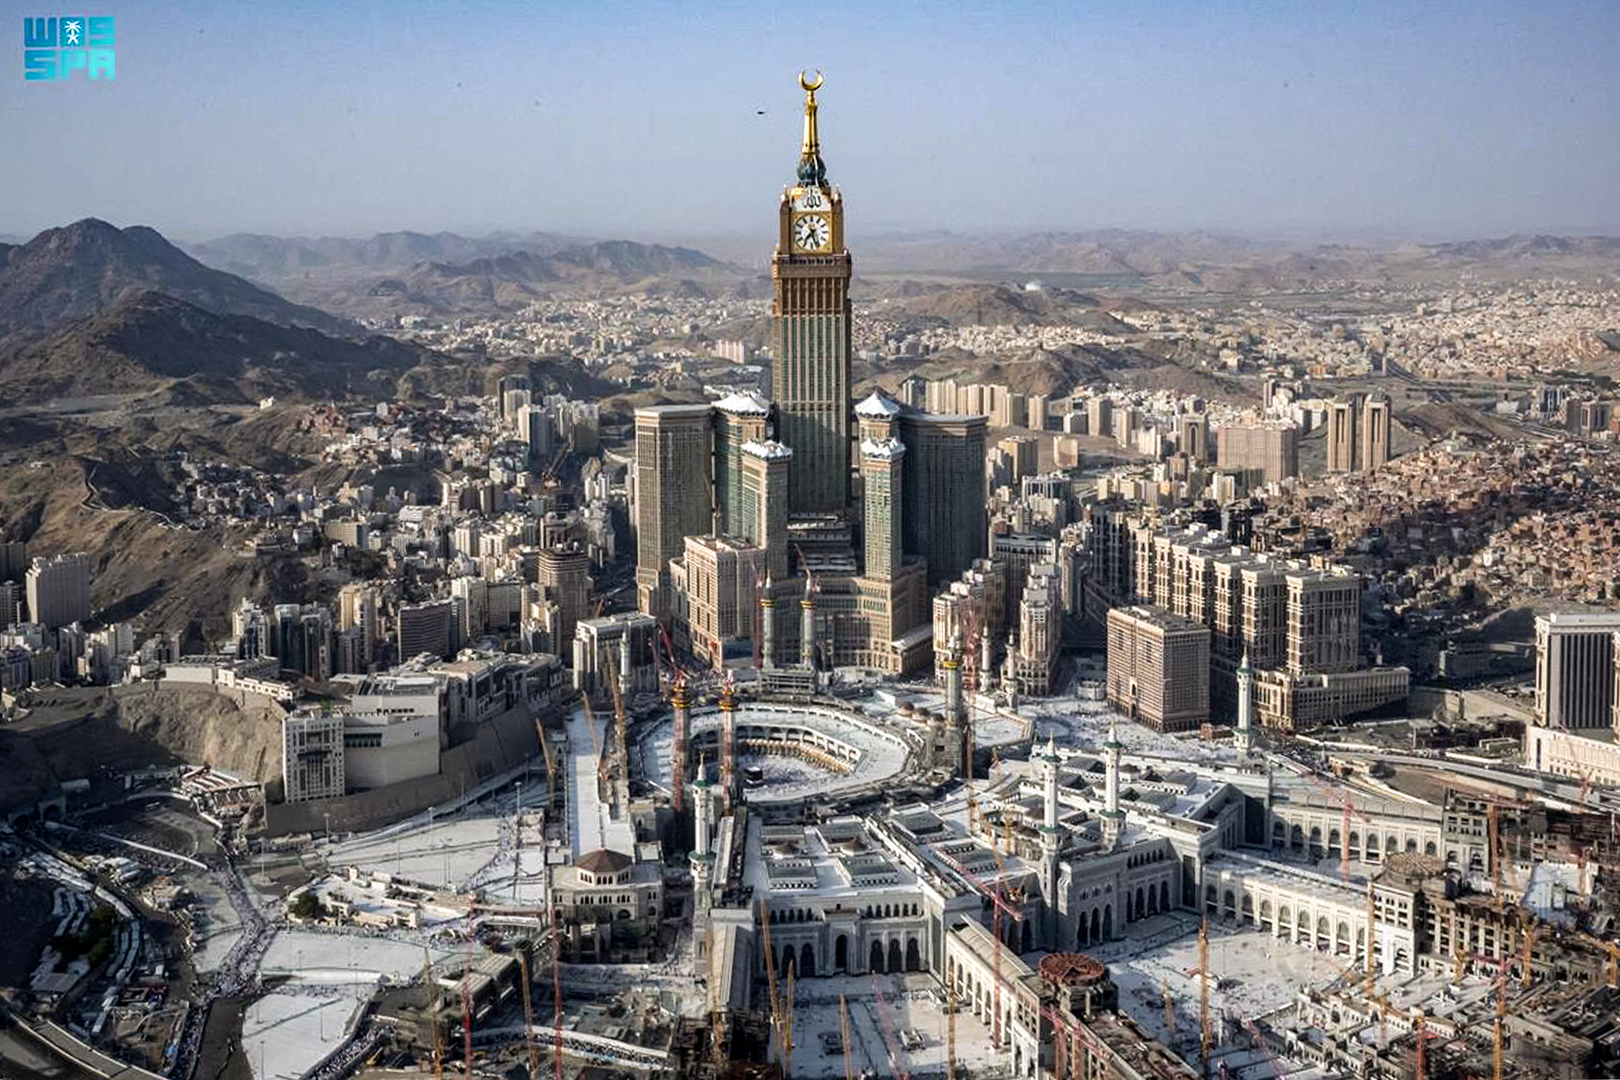 السعودية.. الداخلية تقرر عدم السماح بدخول مكة أو البقاء فيها لمن يحمل تأشيرة زيارة بكافة أنواعها